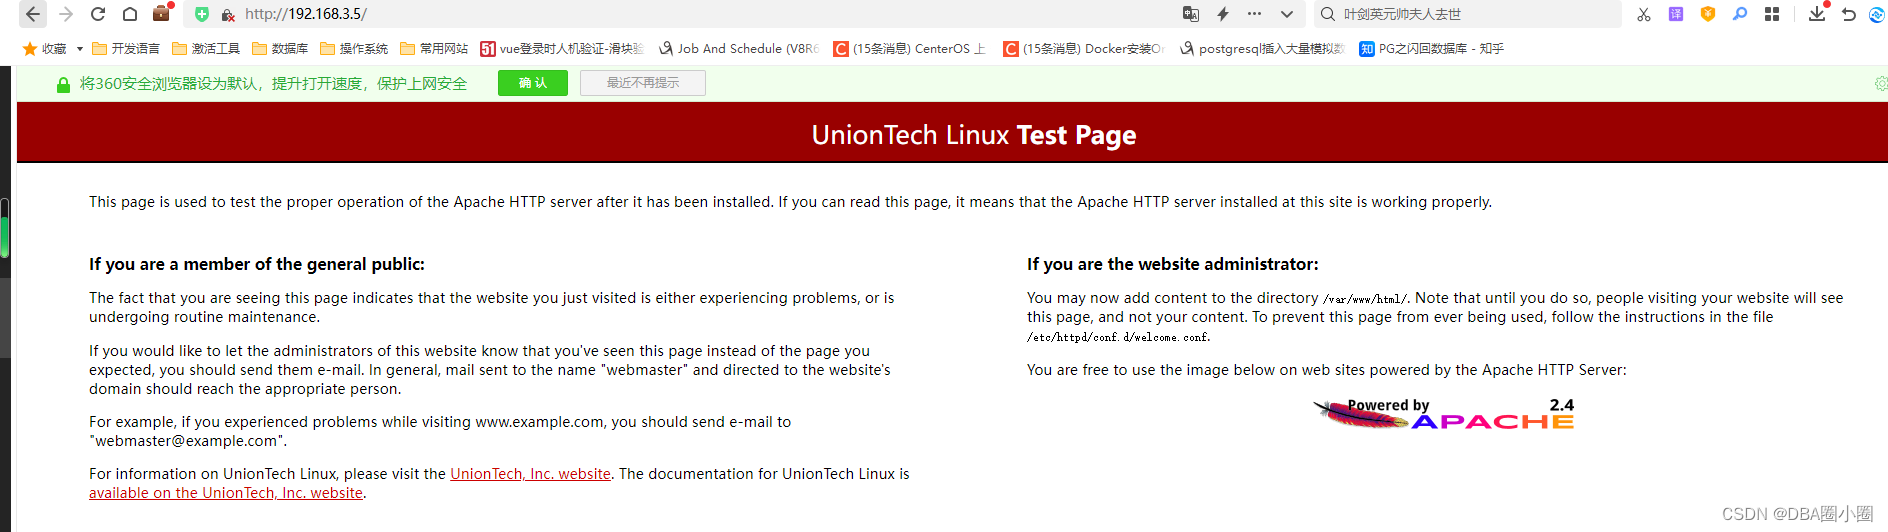 【Liunx】部署WEB服务:Apache